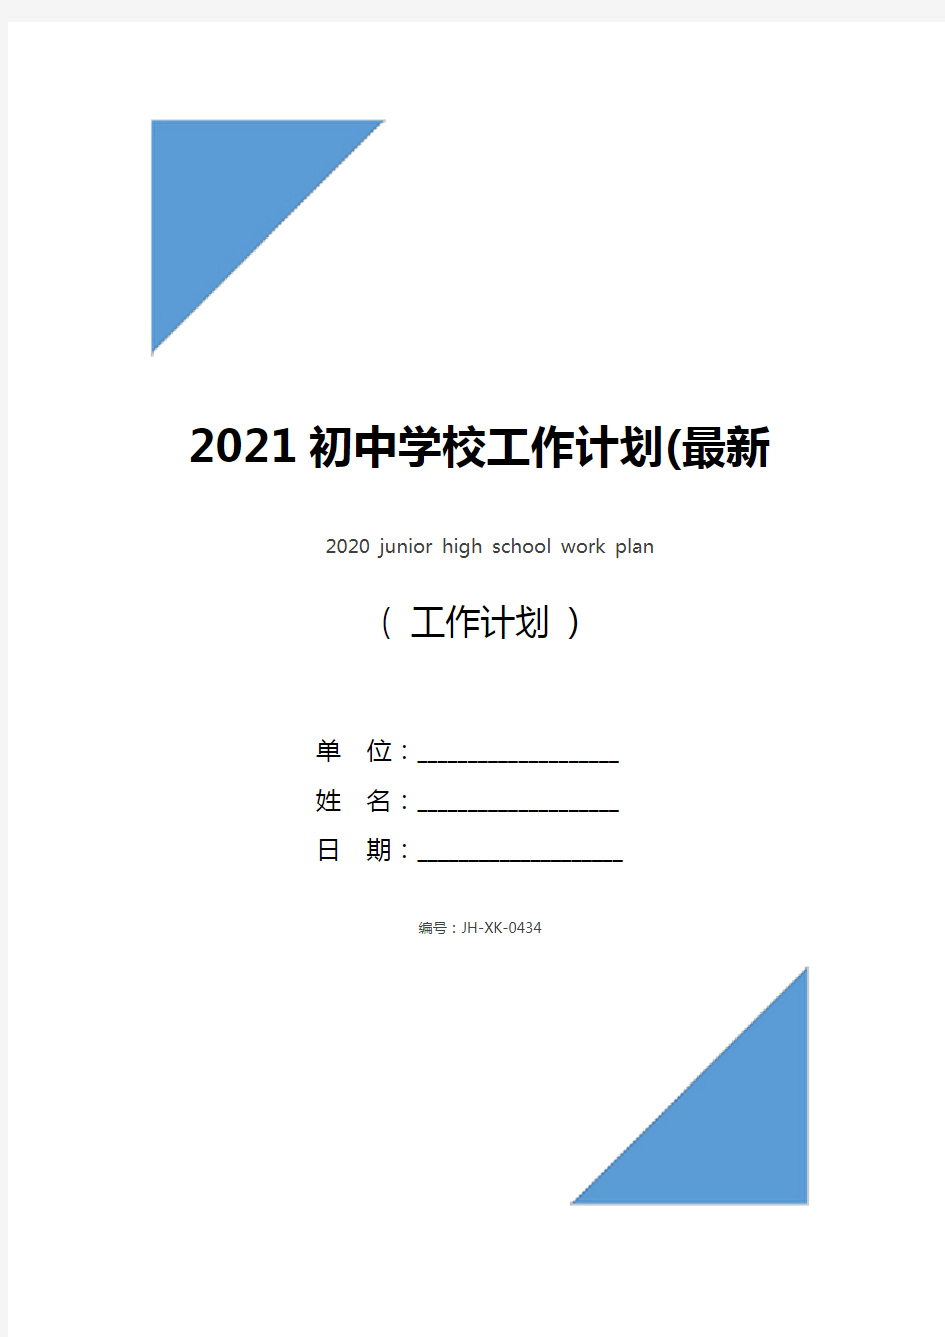 2021初中学校工作计划(最新版)